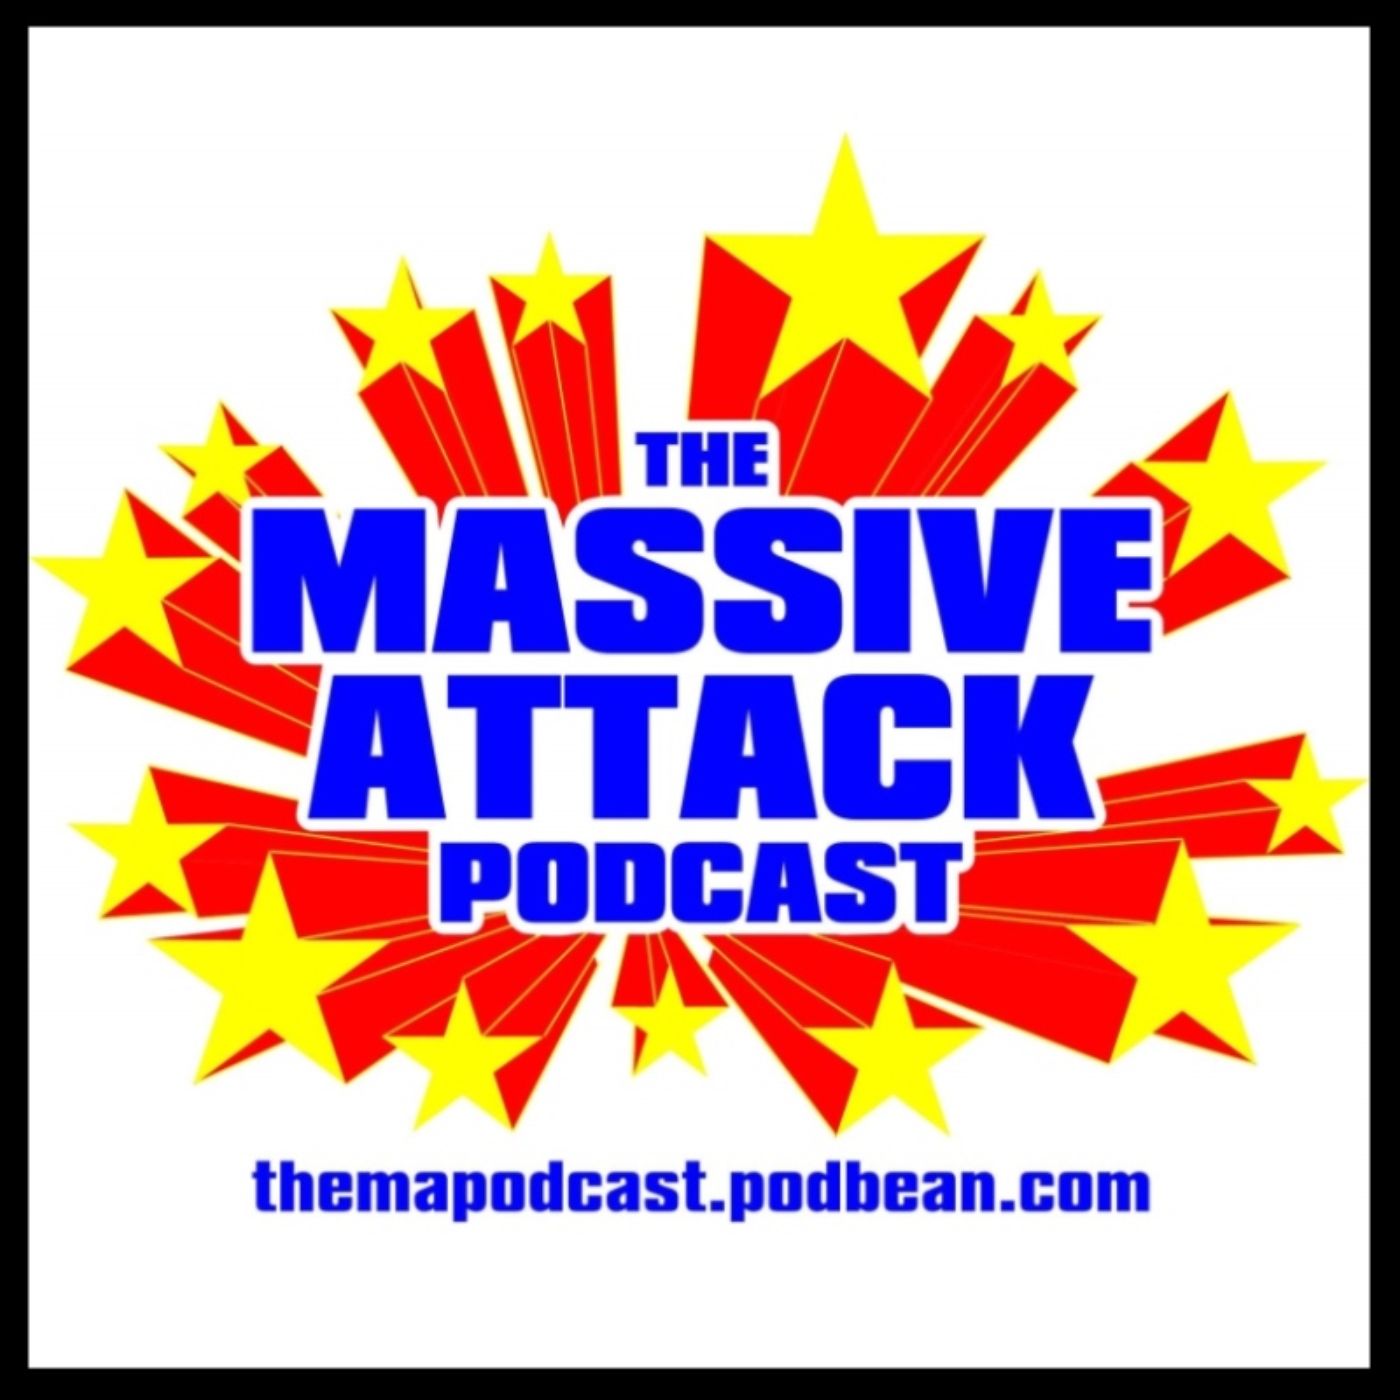 The Massive Attack Podcast